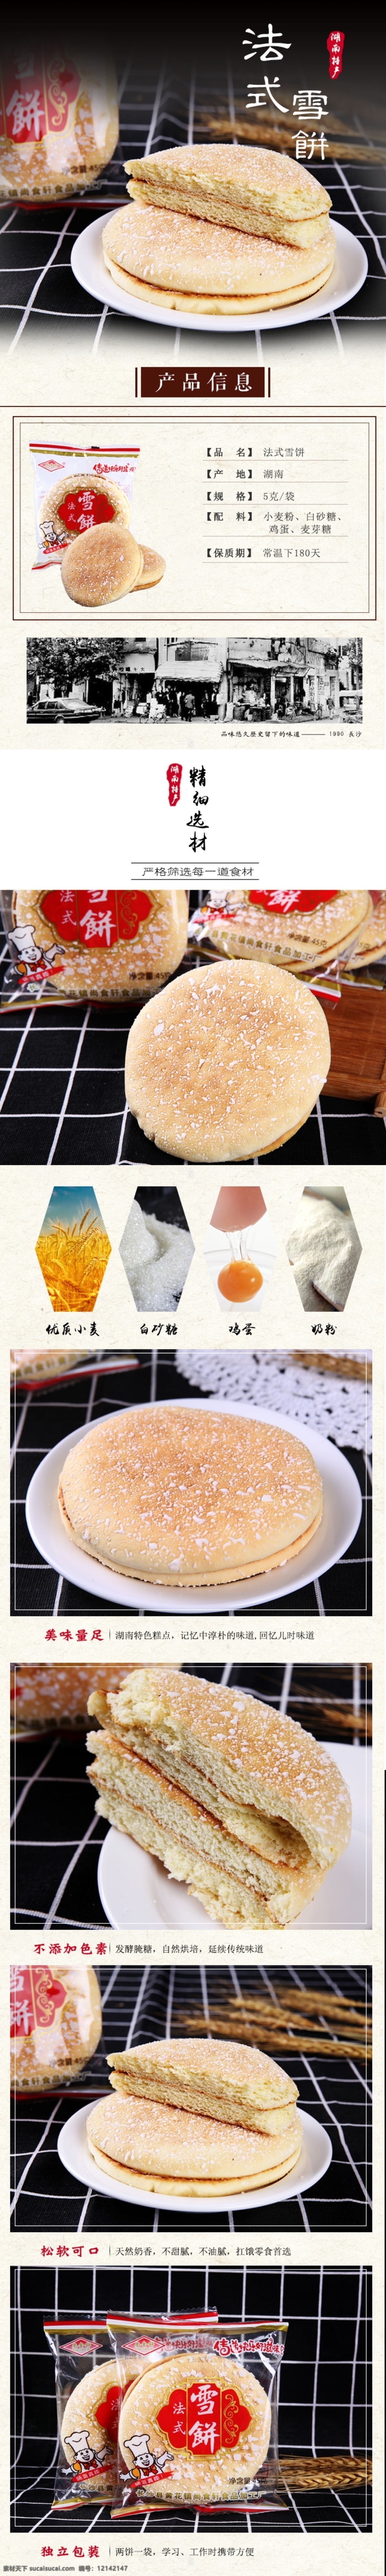 软雪饼 雪花饼 湖南雪饼 传统法式雪饼 淘宝界面设计